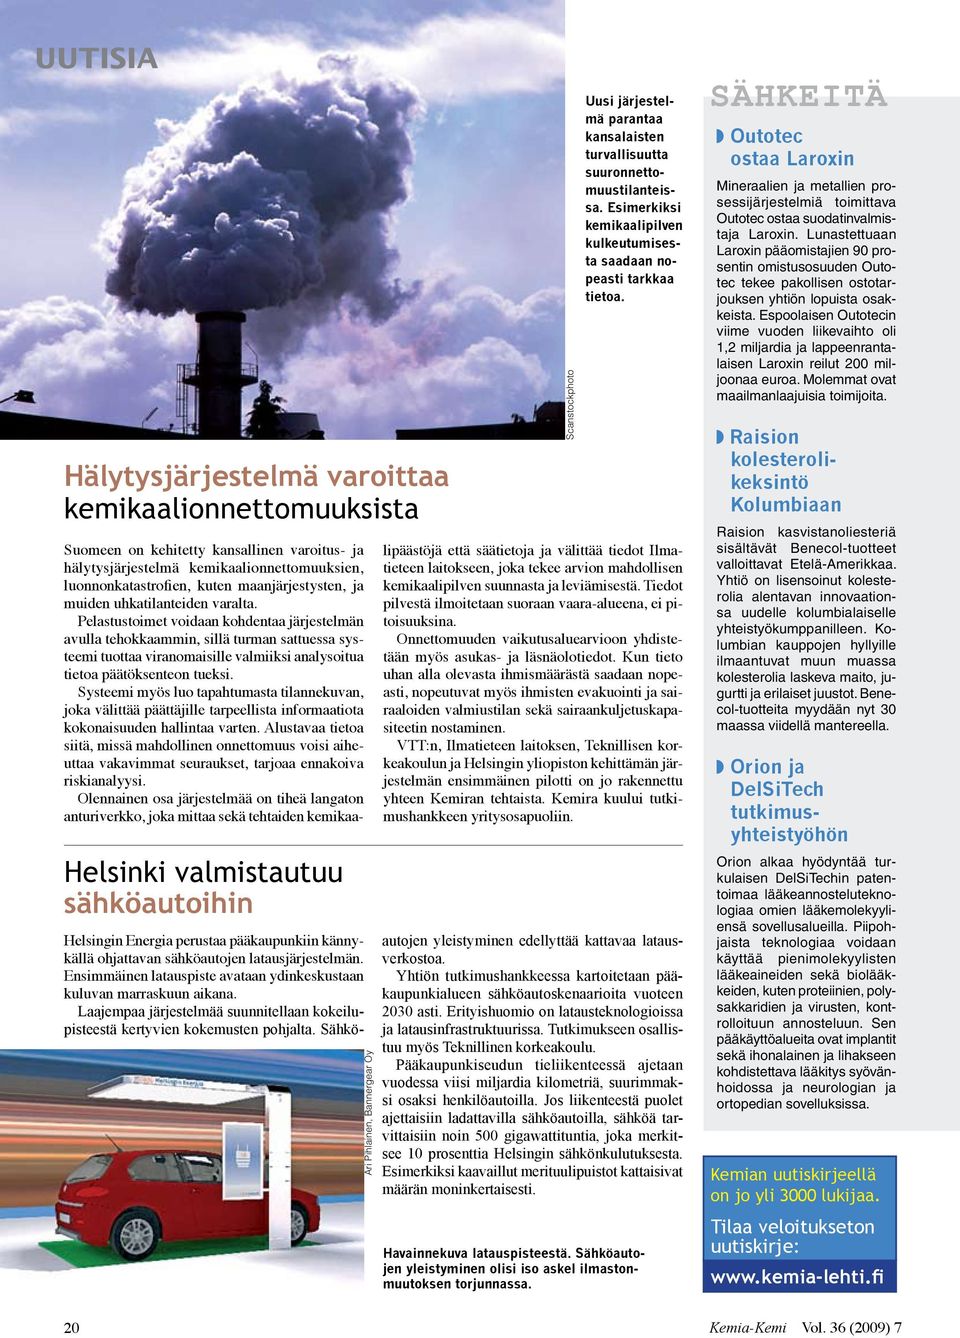 Sähkö- 20 Ari Pihlainen, Bannergear Oy Uusi järjestelmä parantaa kansalaisten turvallisuutta suuronnettomuustilanteissa. Esimerkiksi kemikaalipilven kulkeutumisesta saadaan nopeasti tarkkaa tietoa.